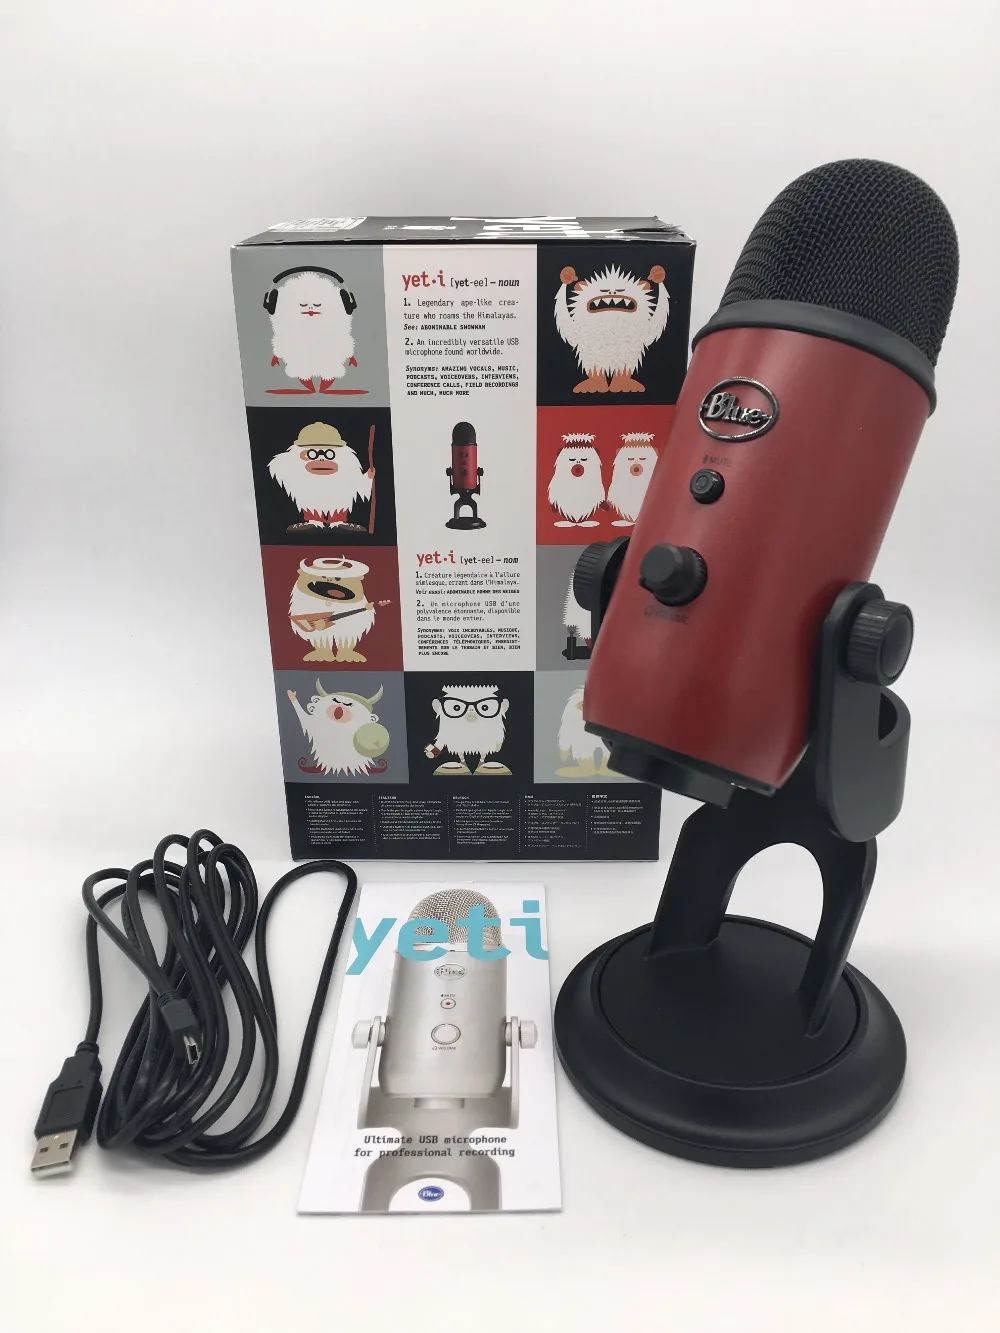 Синий Yeti studio USB конденсаторный микрофон для прямого вещания и записи с внутренней звуковой картой plug and play